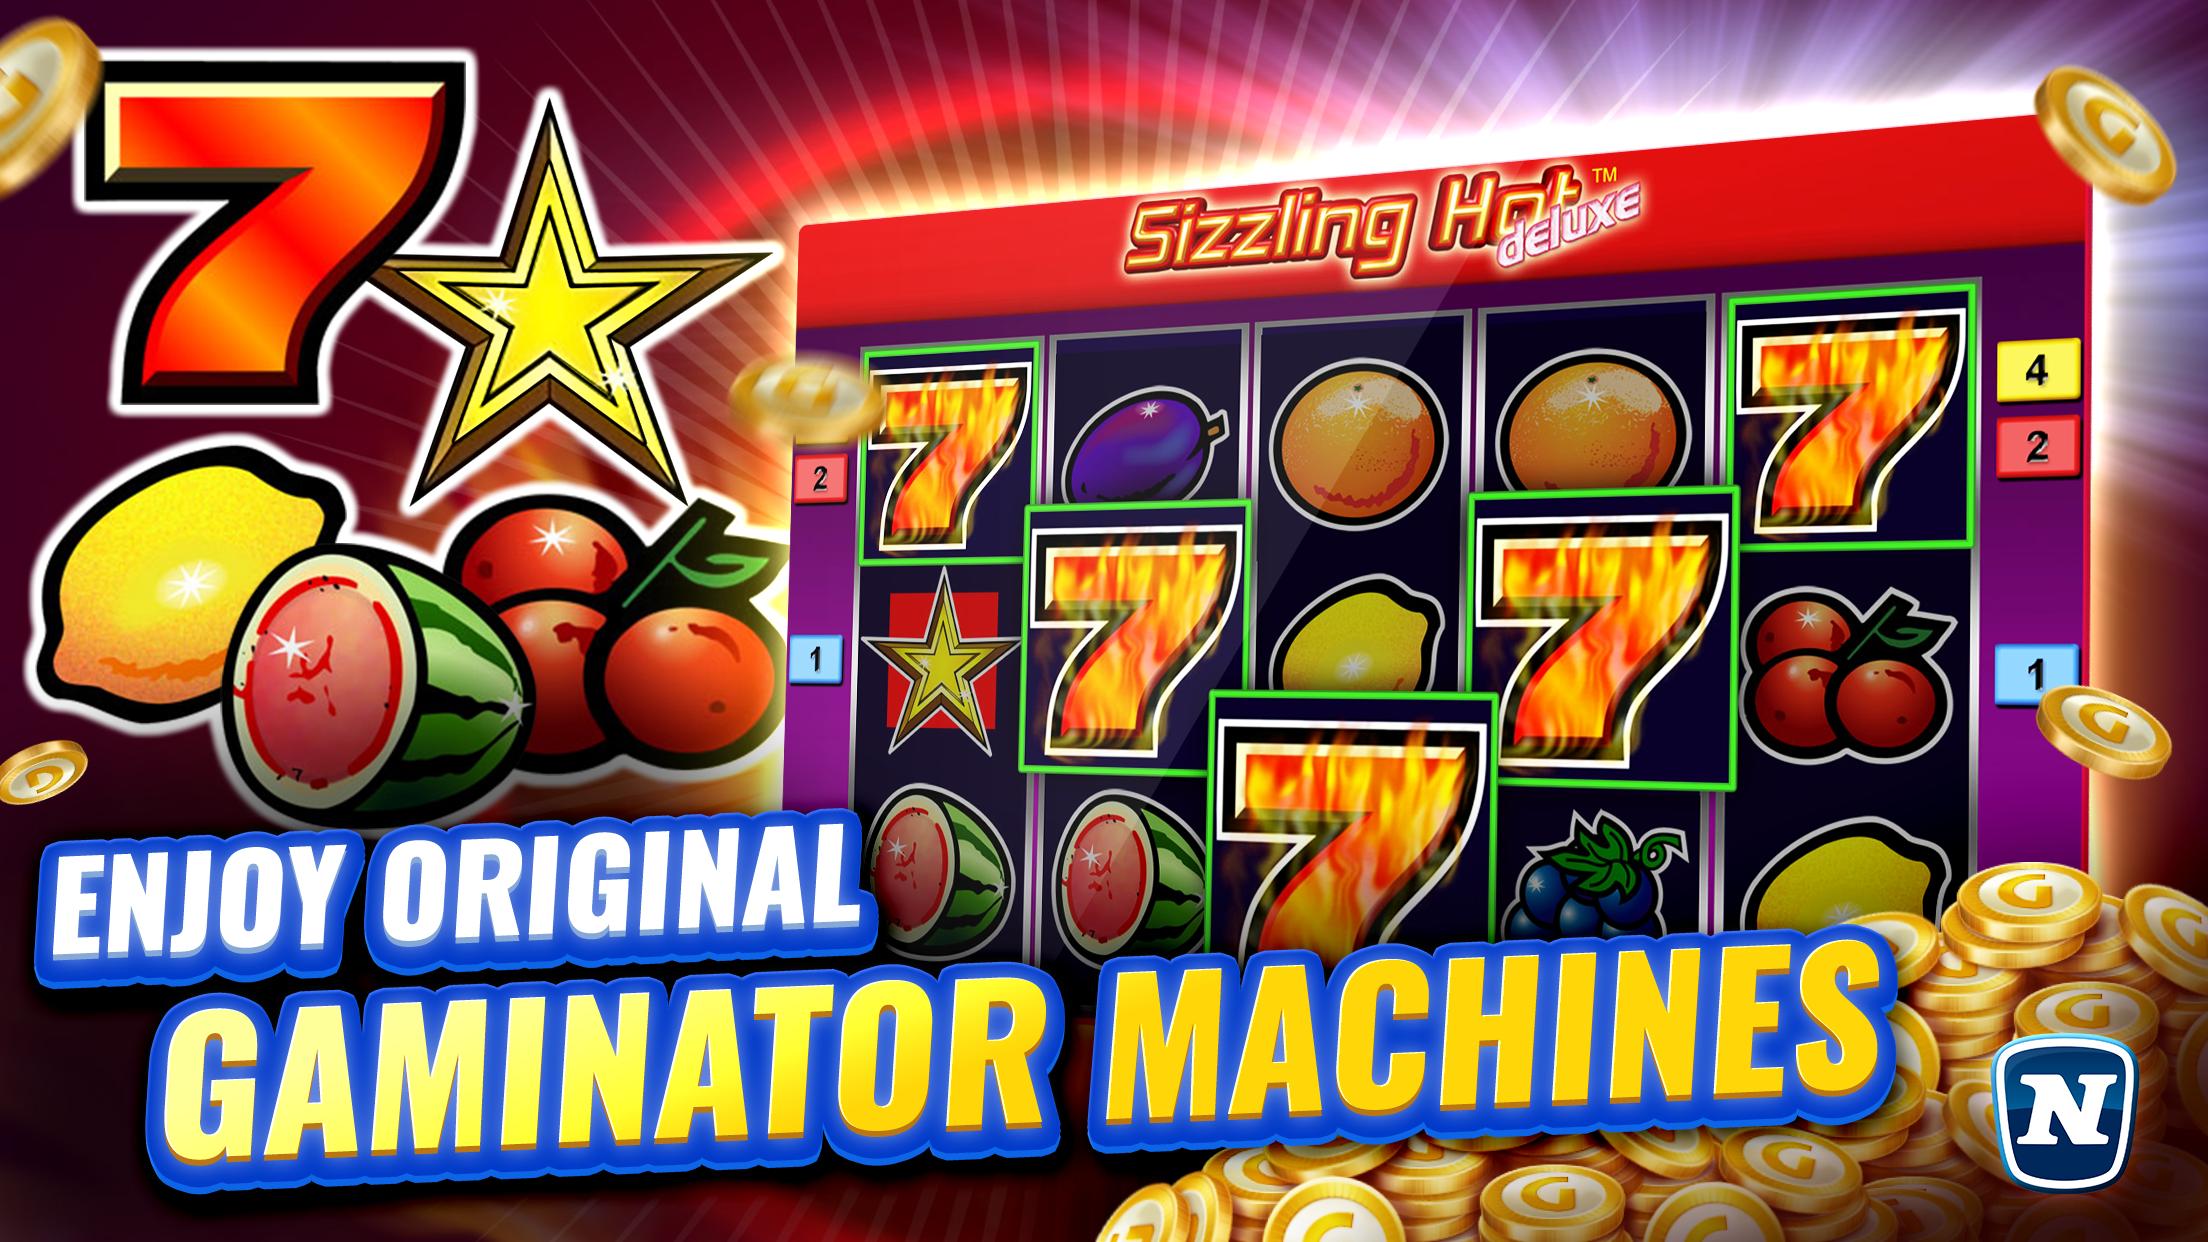 Gaminator Casino Slots - Play Slot Machines 777 3.21.1 Screenshot 1